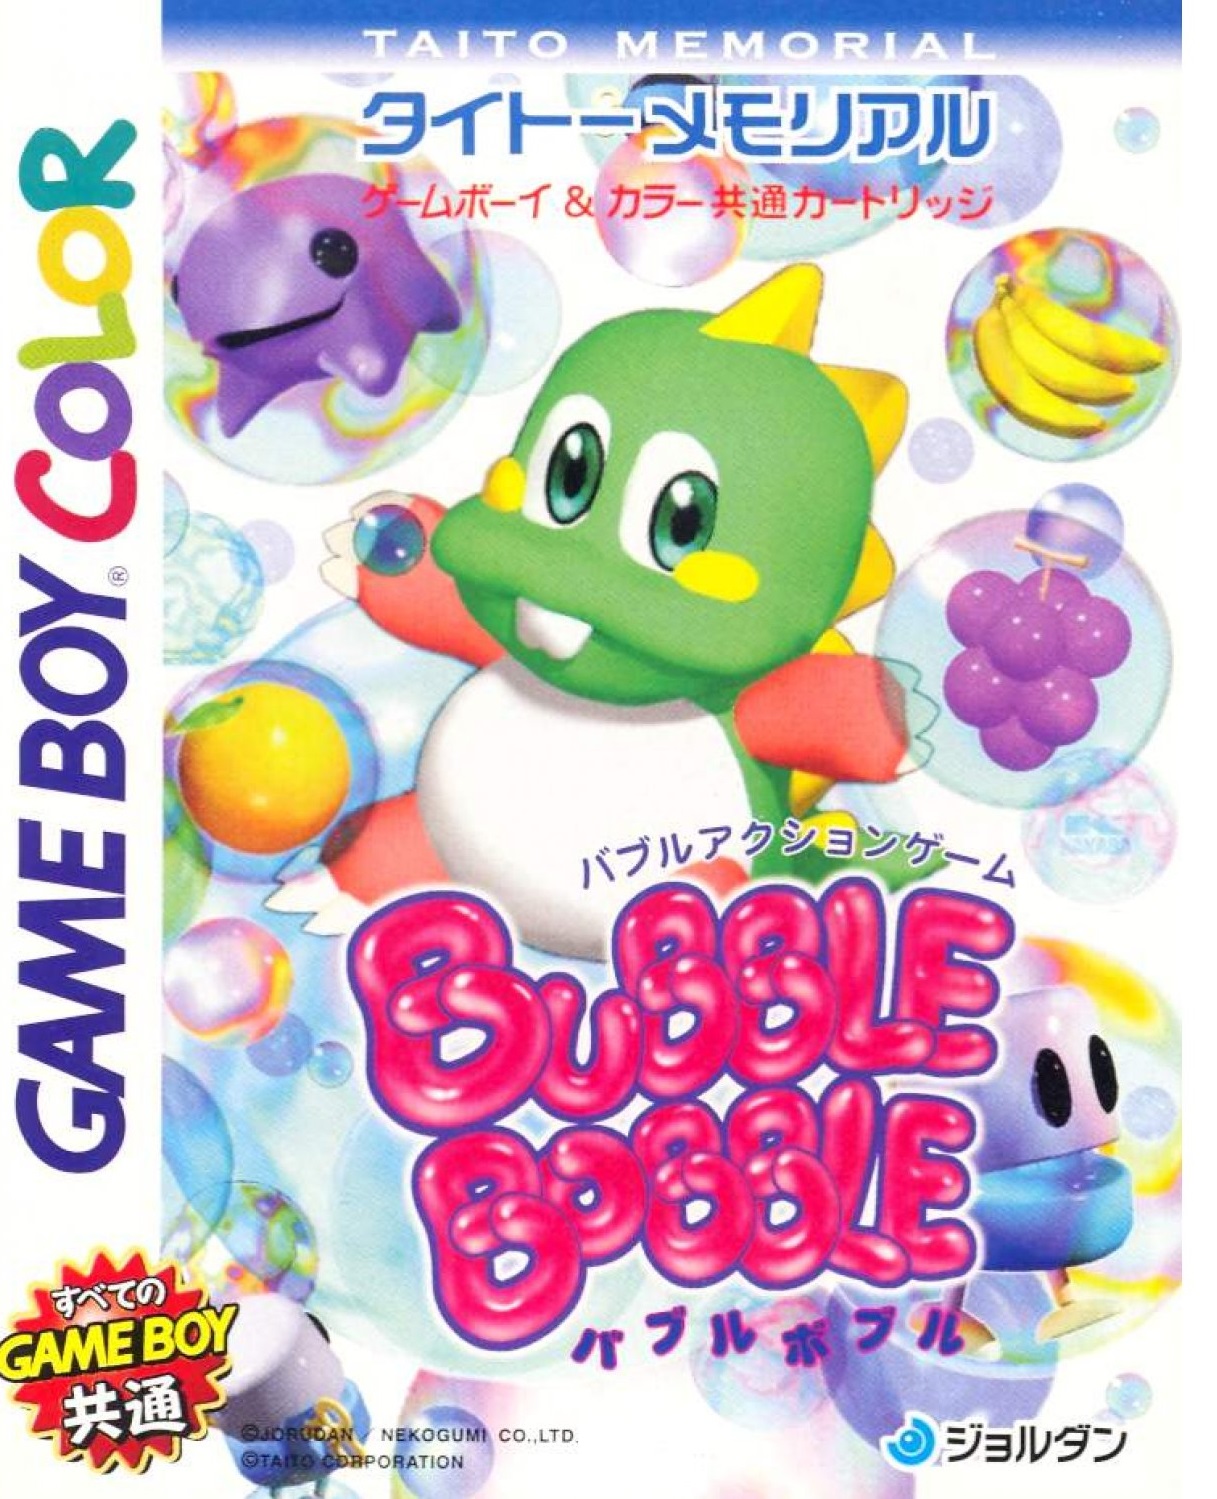 bubble bobble gbc